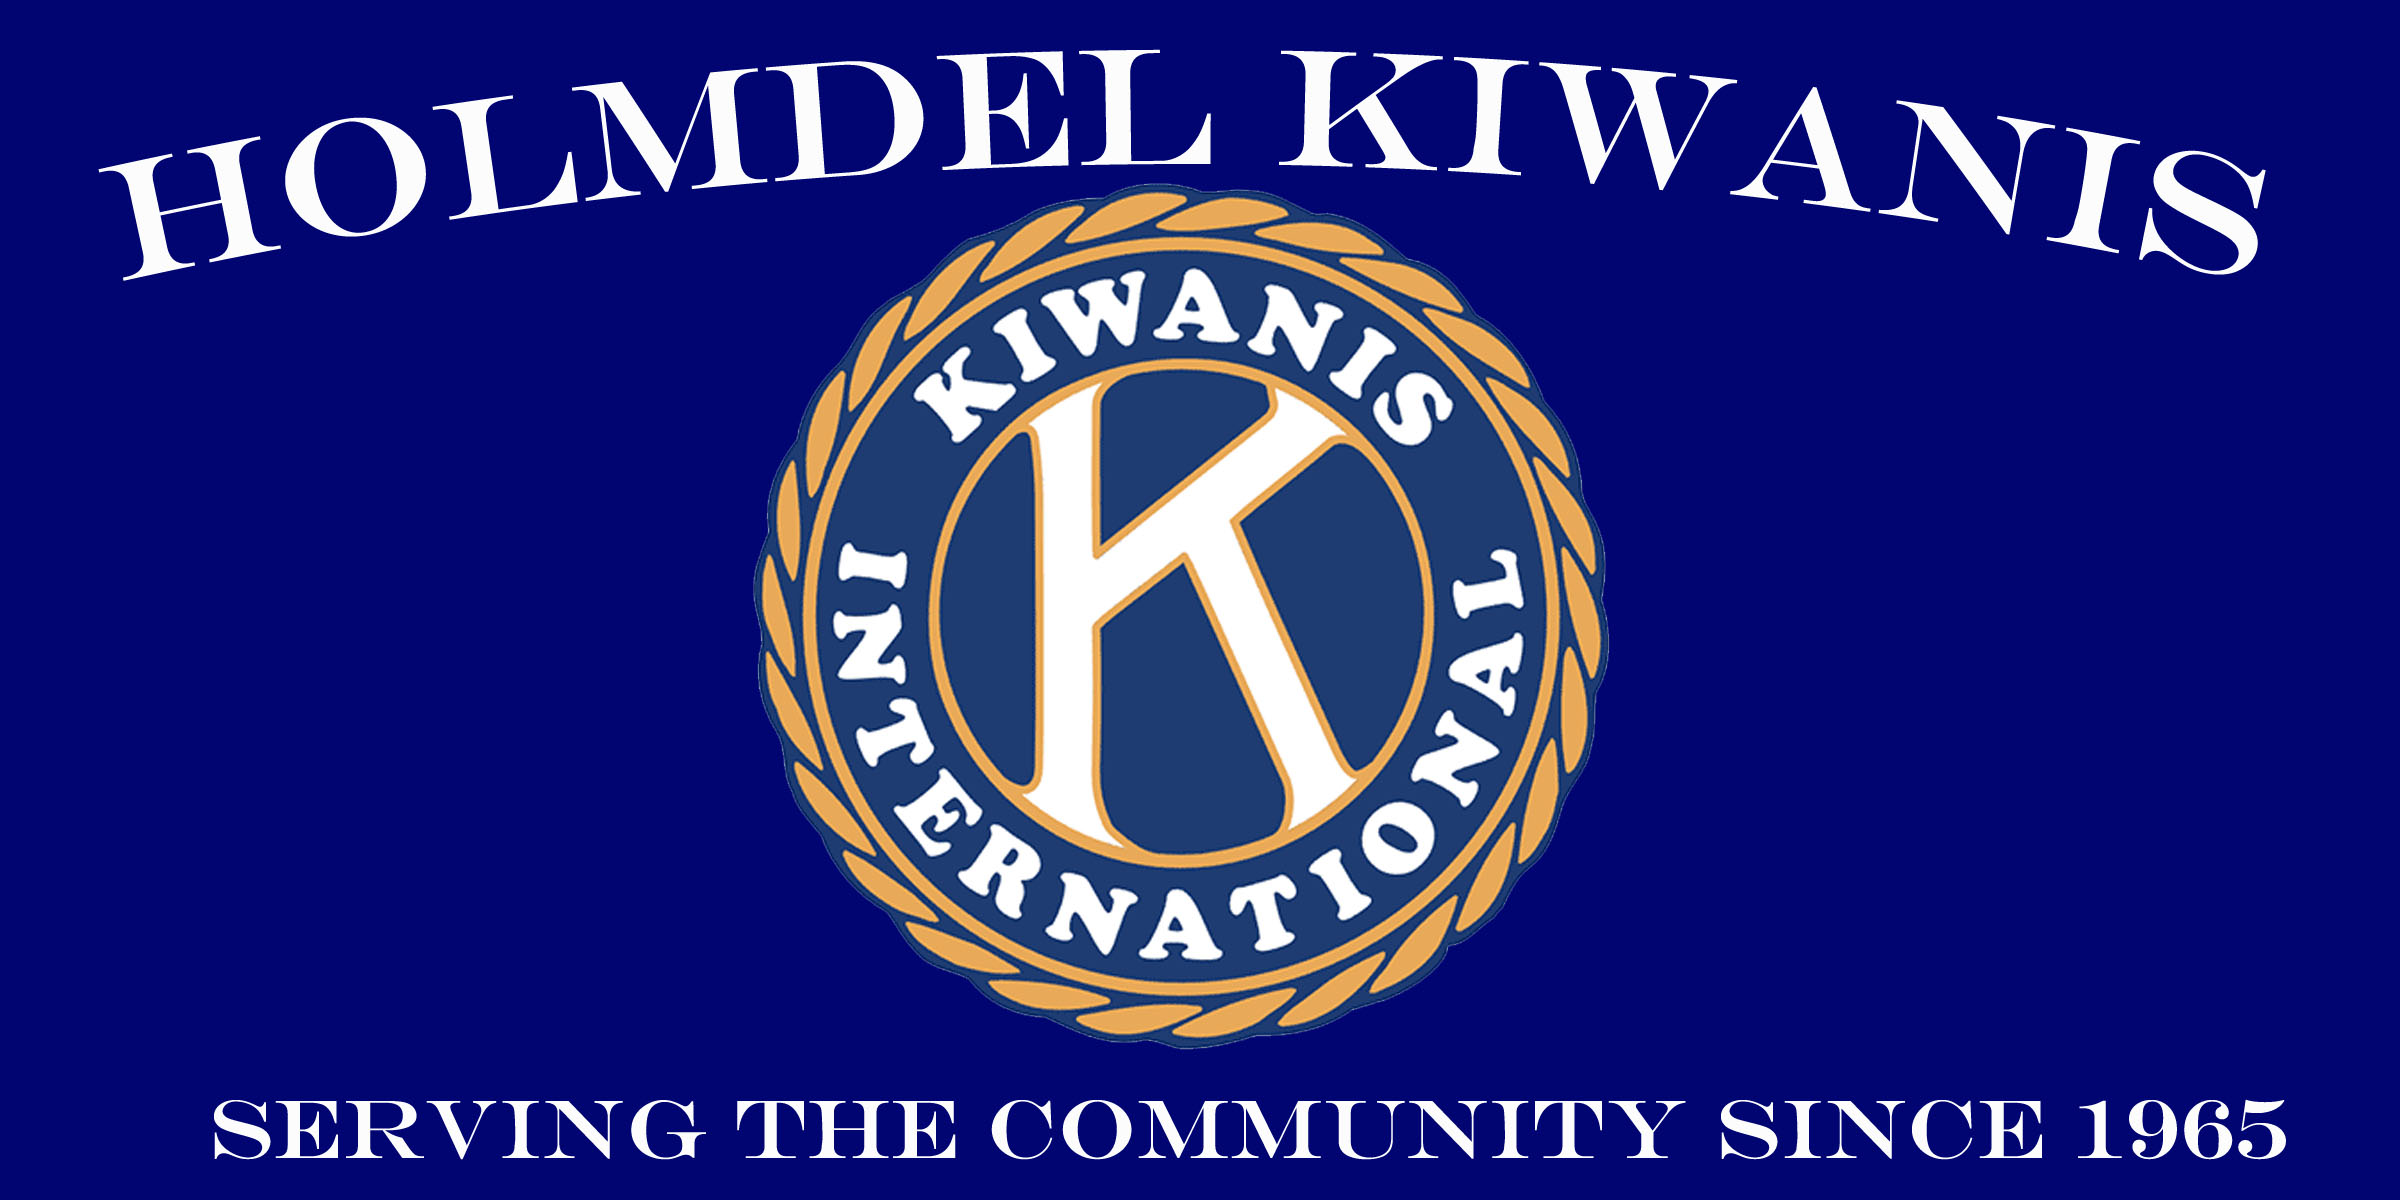 Kiwanis Club of Holmdel